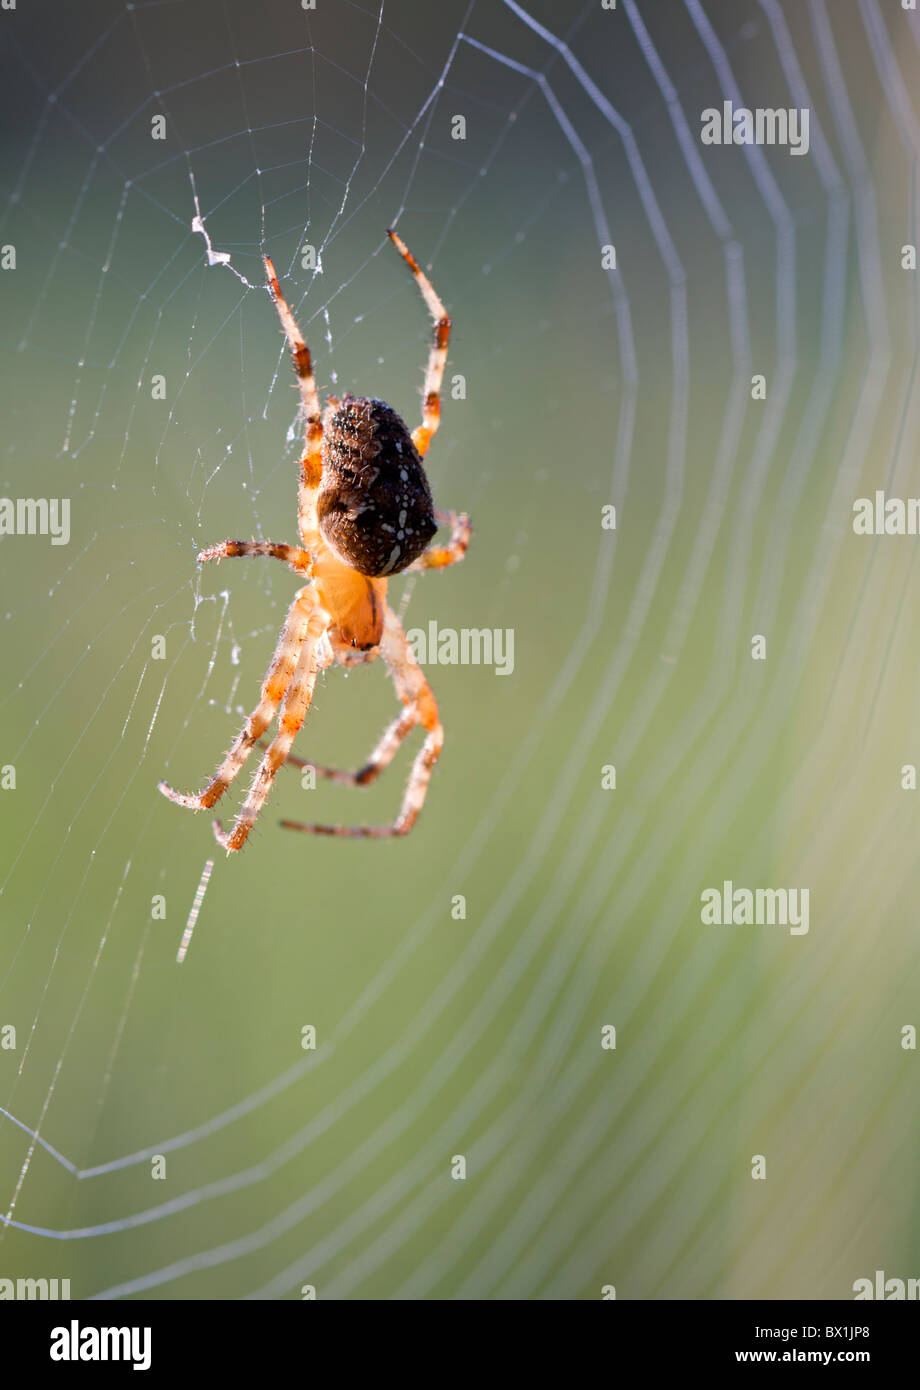 Garden spider in a web - Araneus diadematus Stock Photo